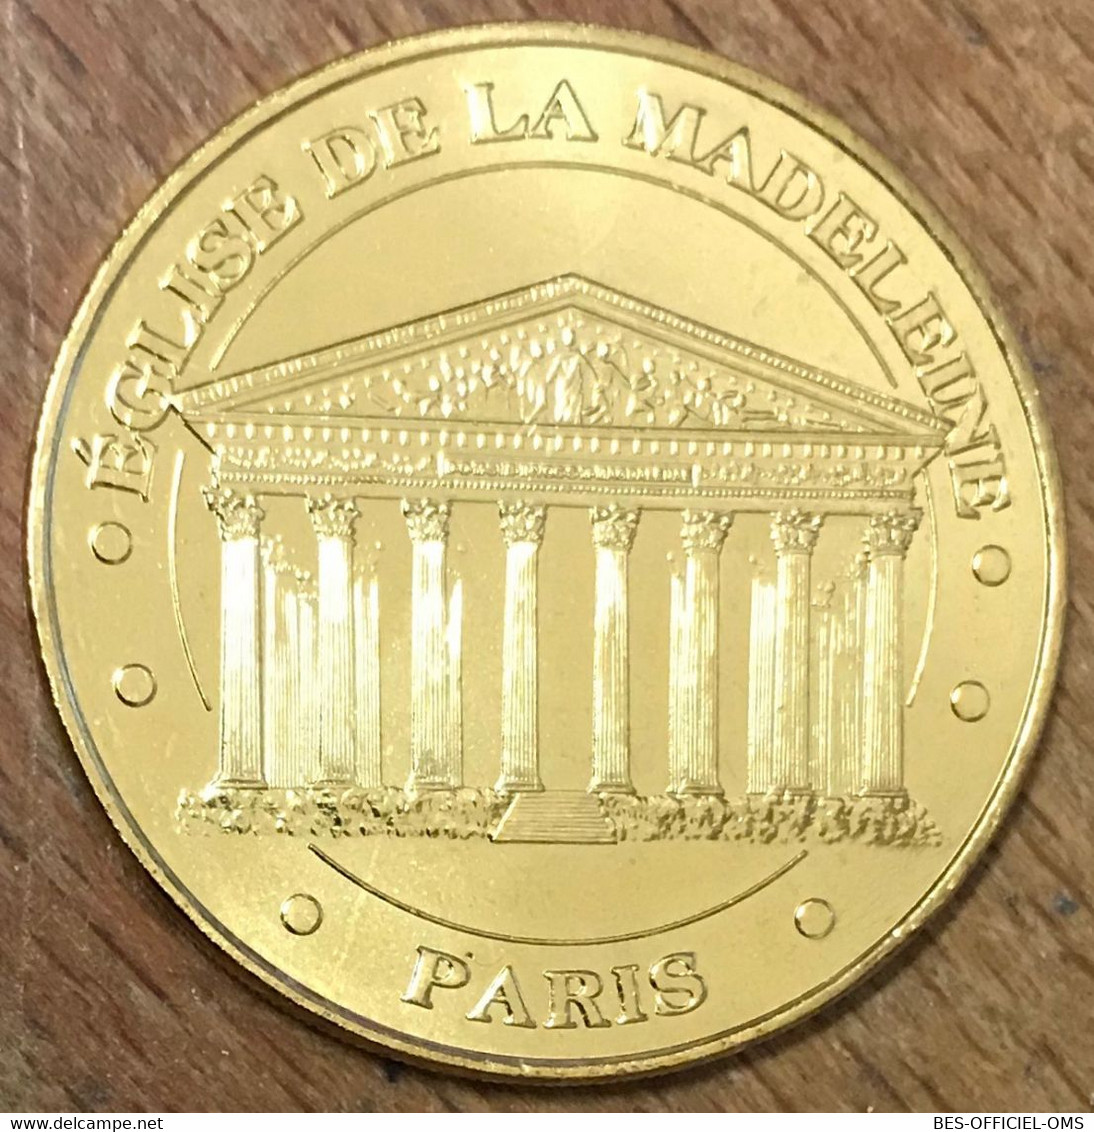 75008 PARIS ÉGLISE DE LA MADELEINE MDP 2018 MÉDAILLE SOUVENIR MONNAIE DE PARIS JETON TOURISTIQUE MEDALS TOKENS COINS - 2018